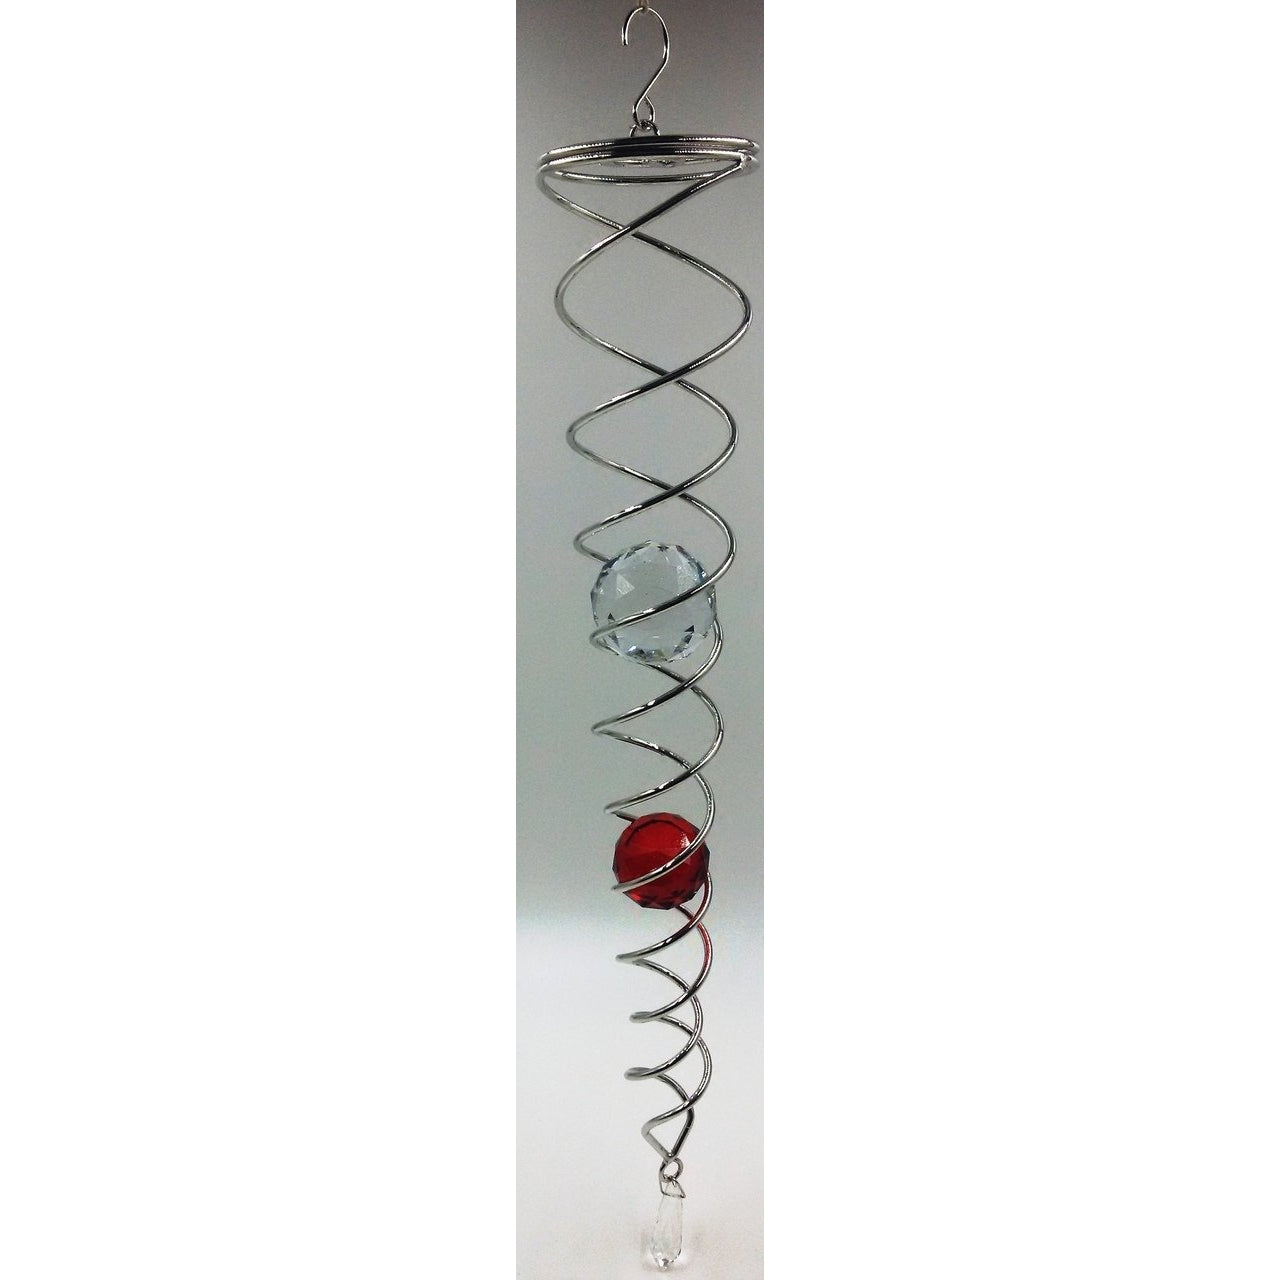 Crystal Hanging Vortex Spinner - Rivendell Shop